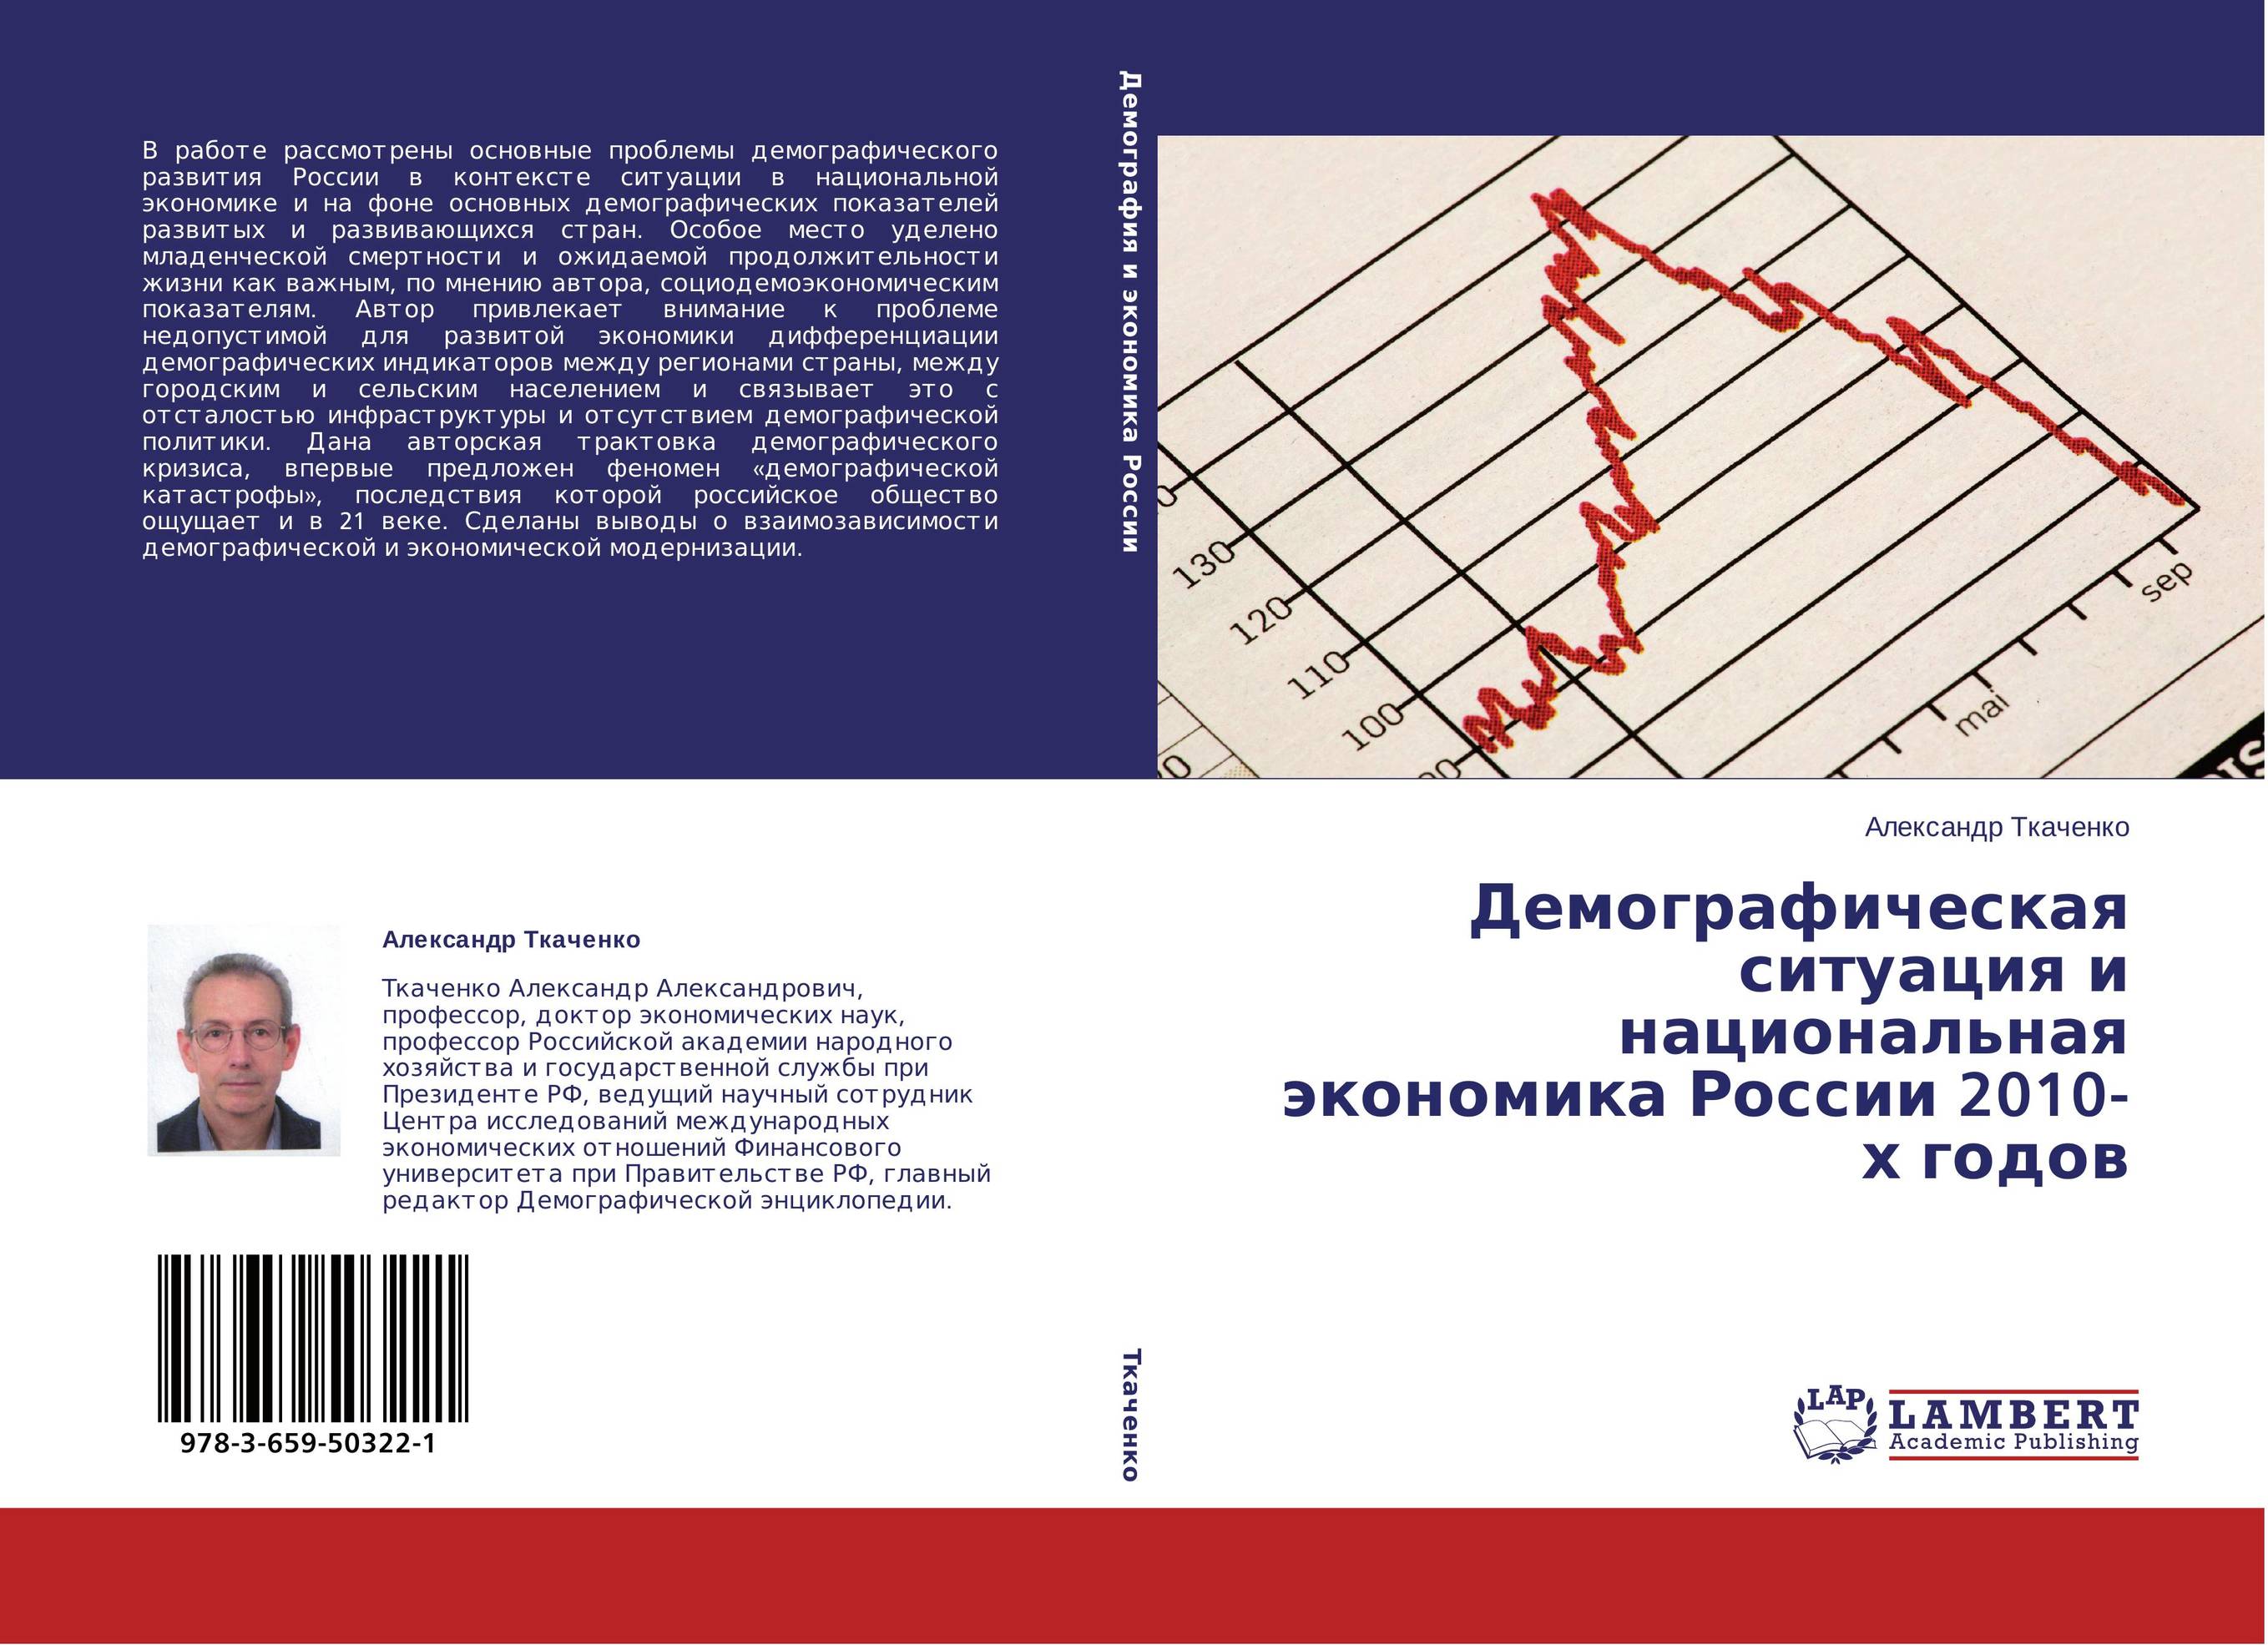 Демографическая ситуация и национальная экономика России 2010-х годов..